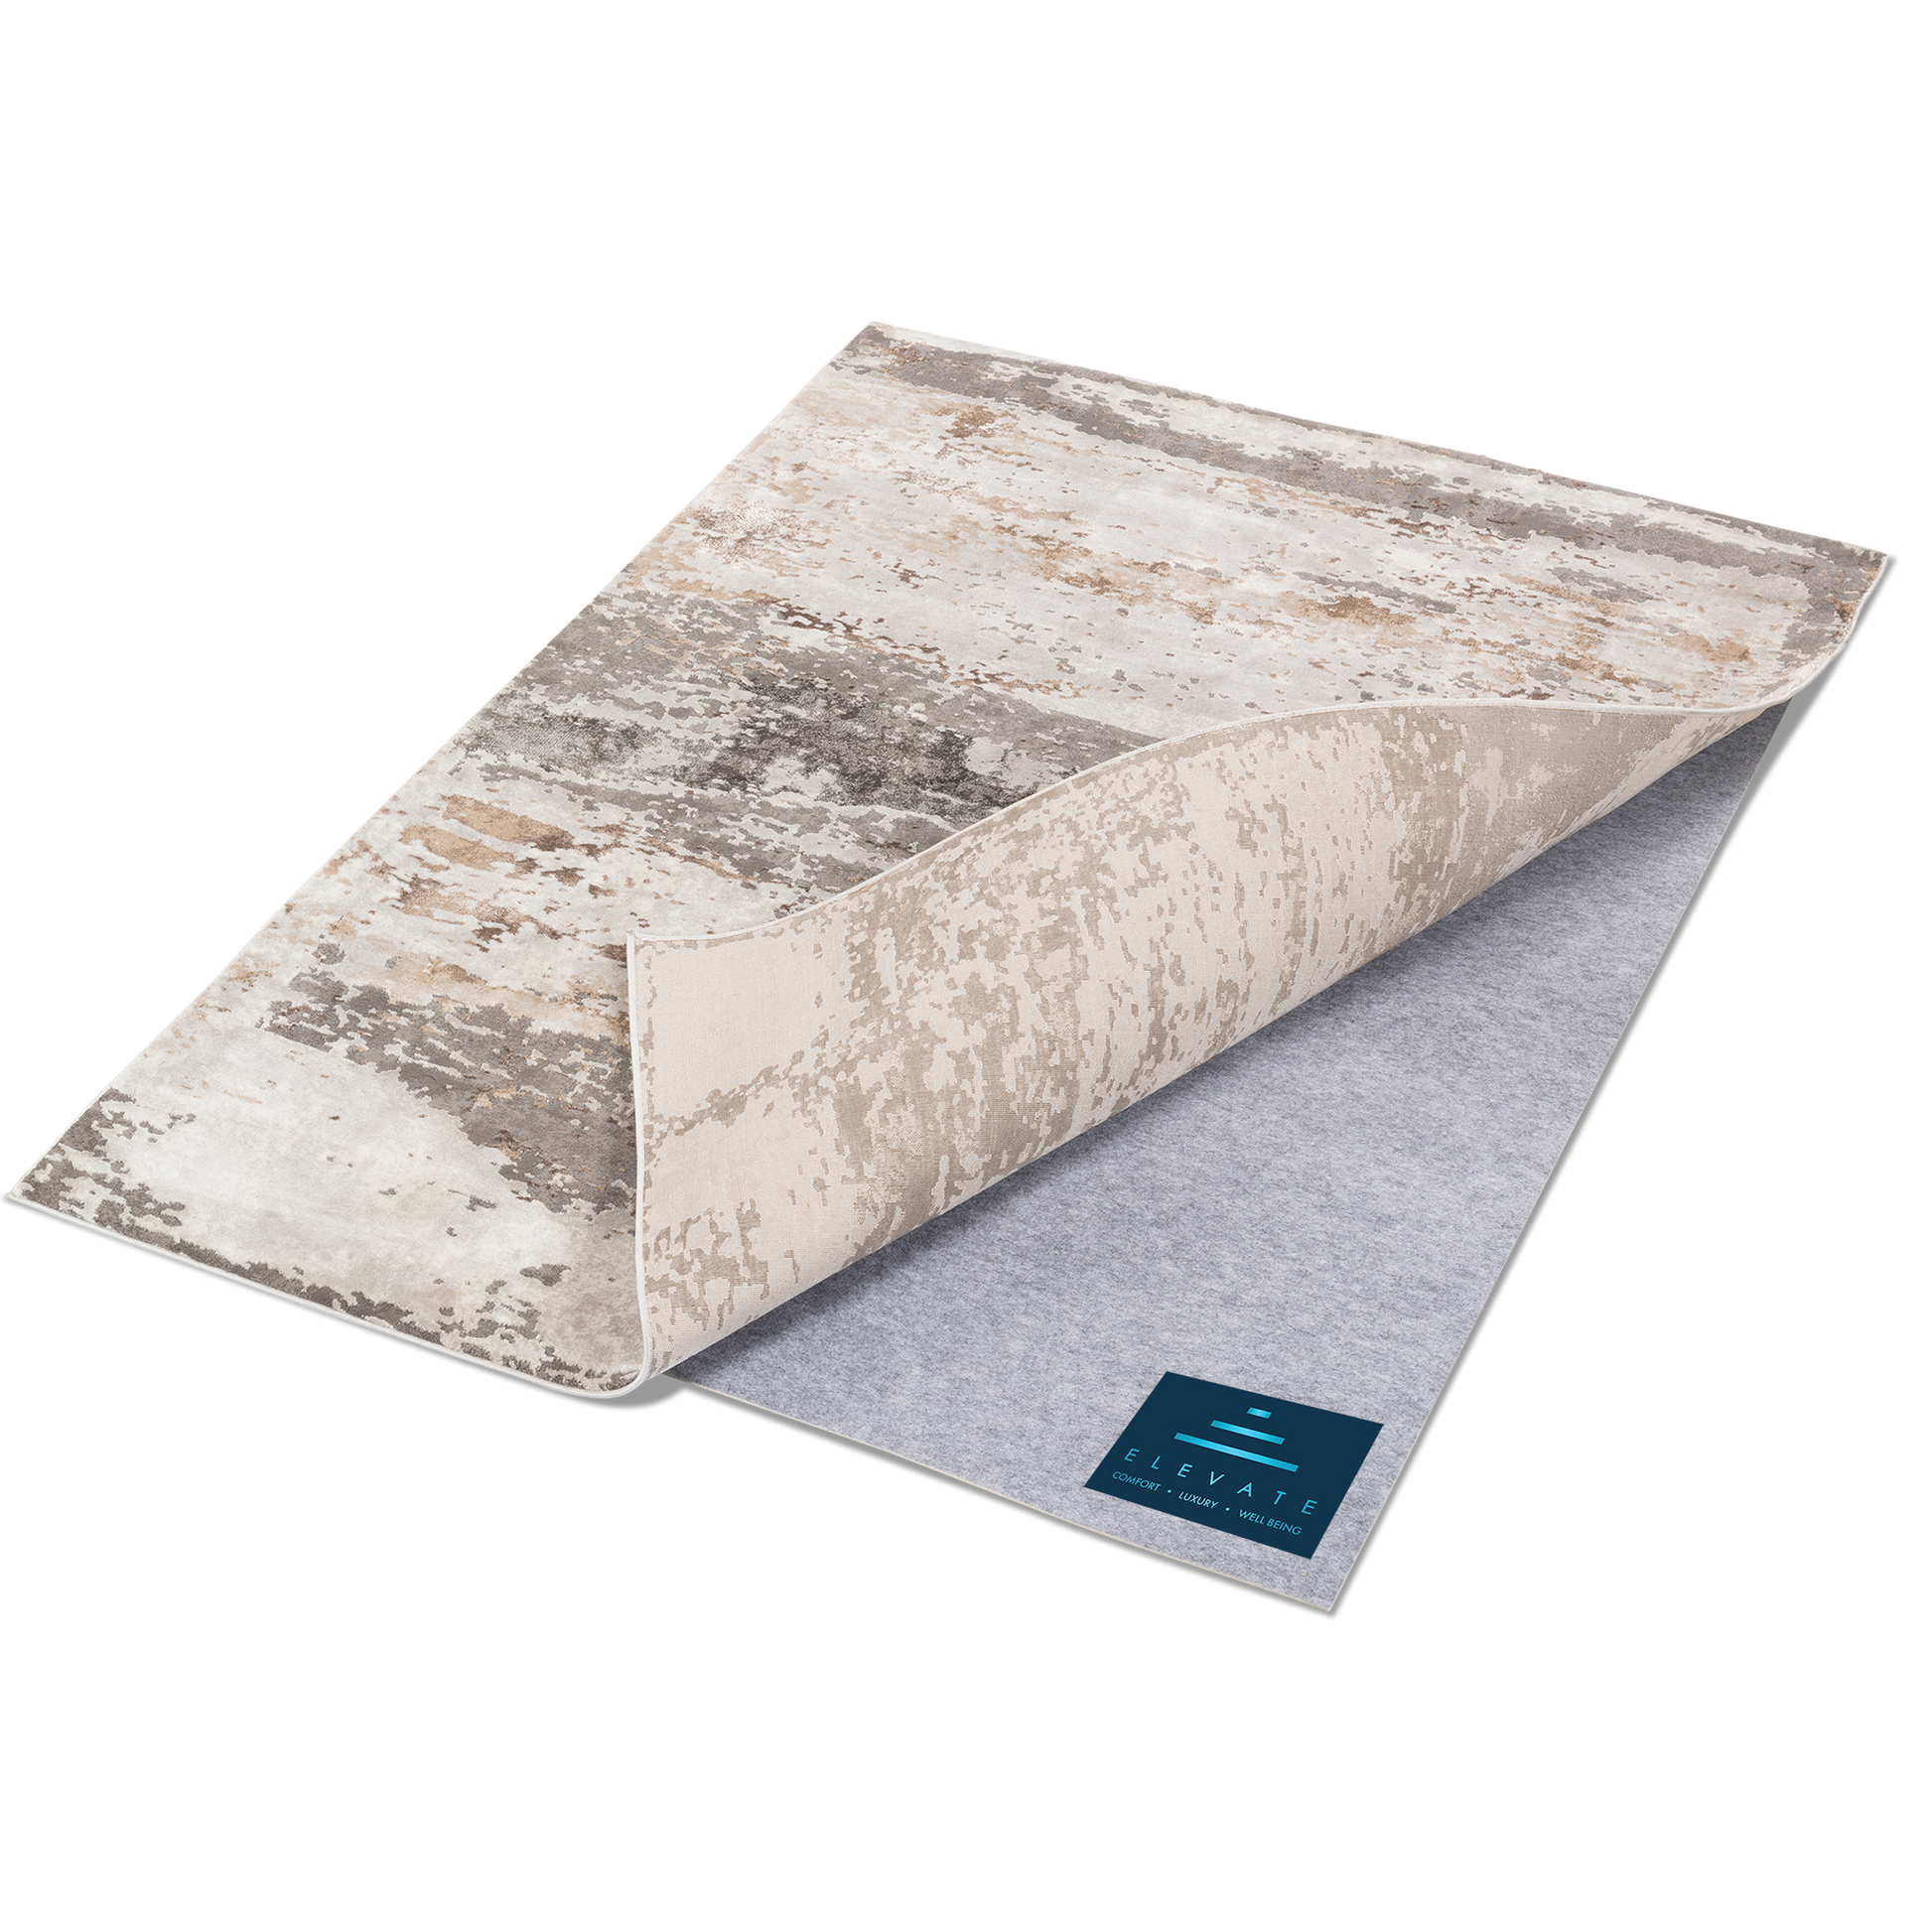 Almohadilla antideslizante para alfombra, almohadilla de agarre fuerte de  2.5 x 9 para alfombras de área y suelos de madera dura, proporciona